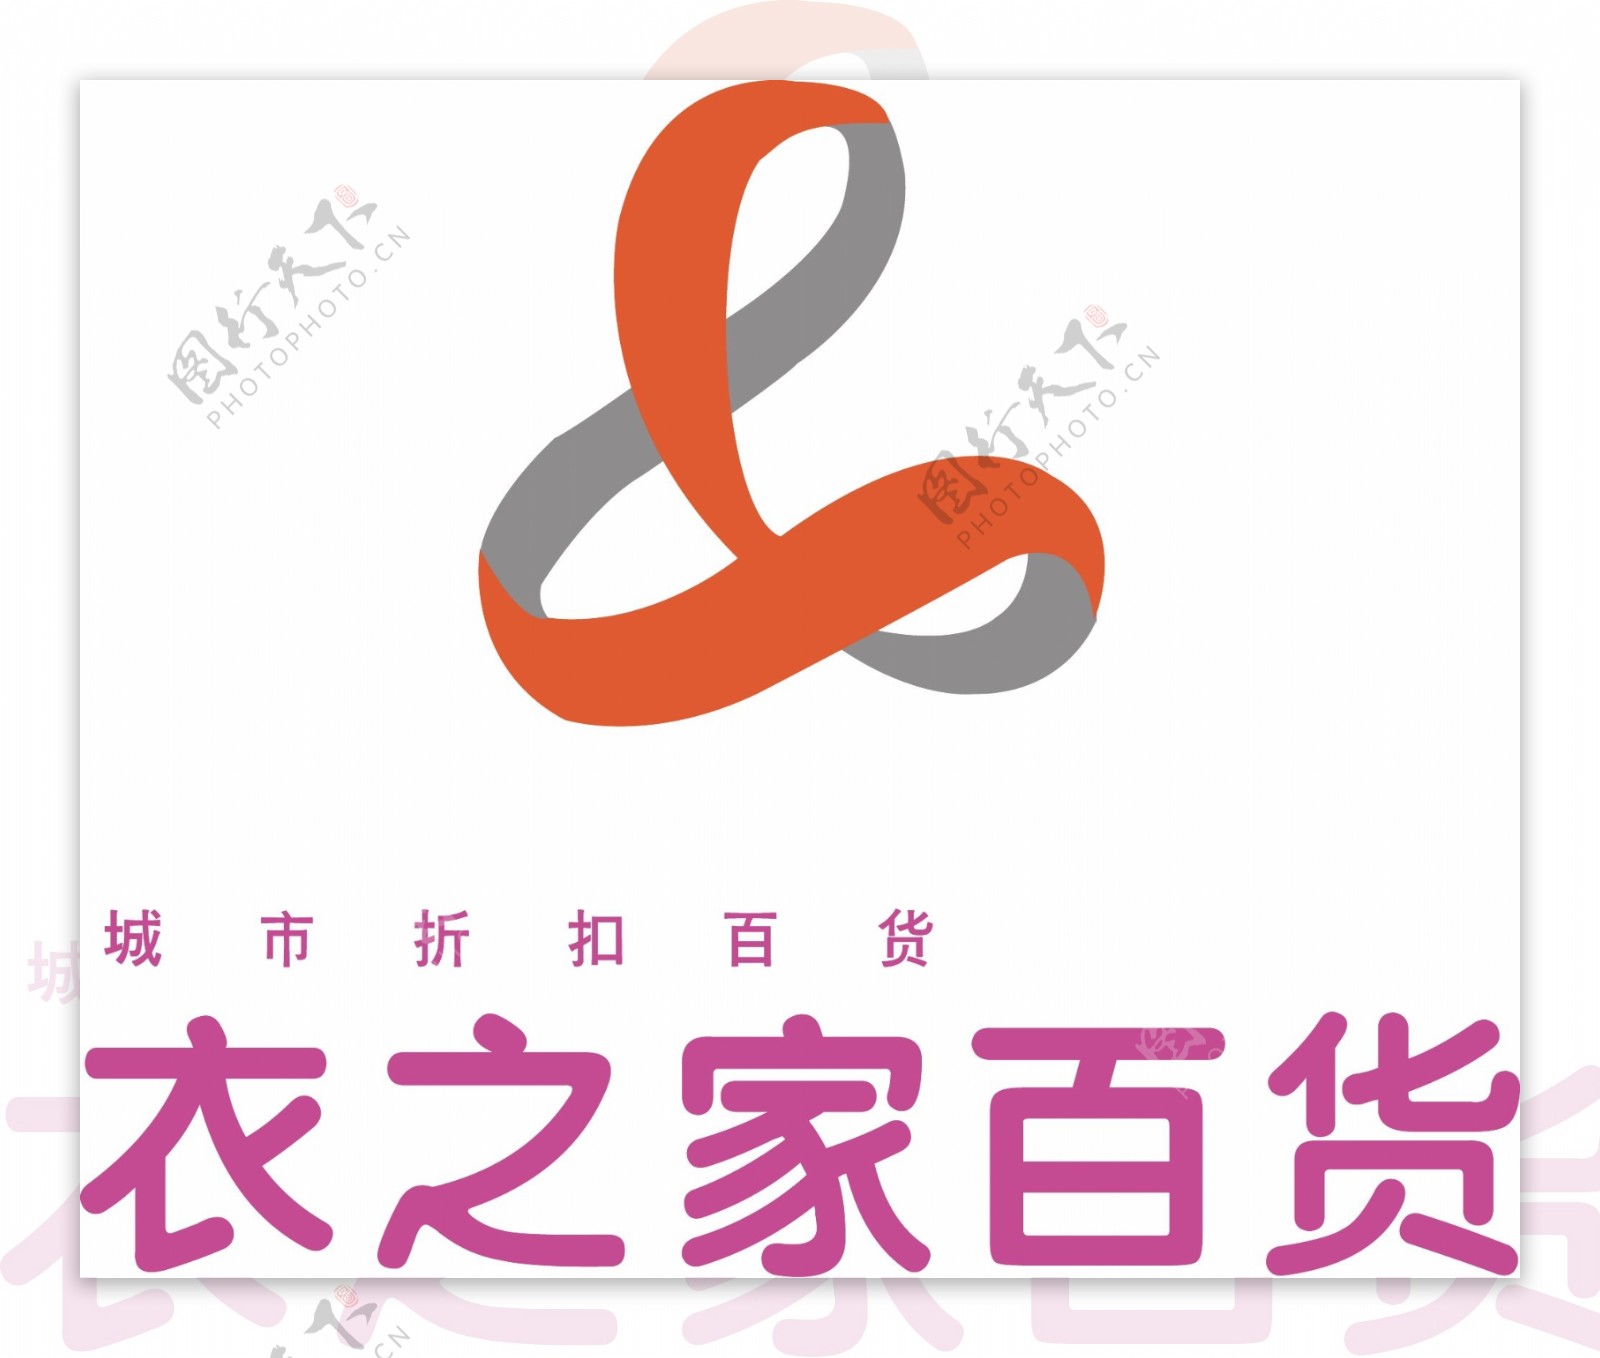 衣之家百货logo图片